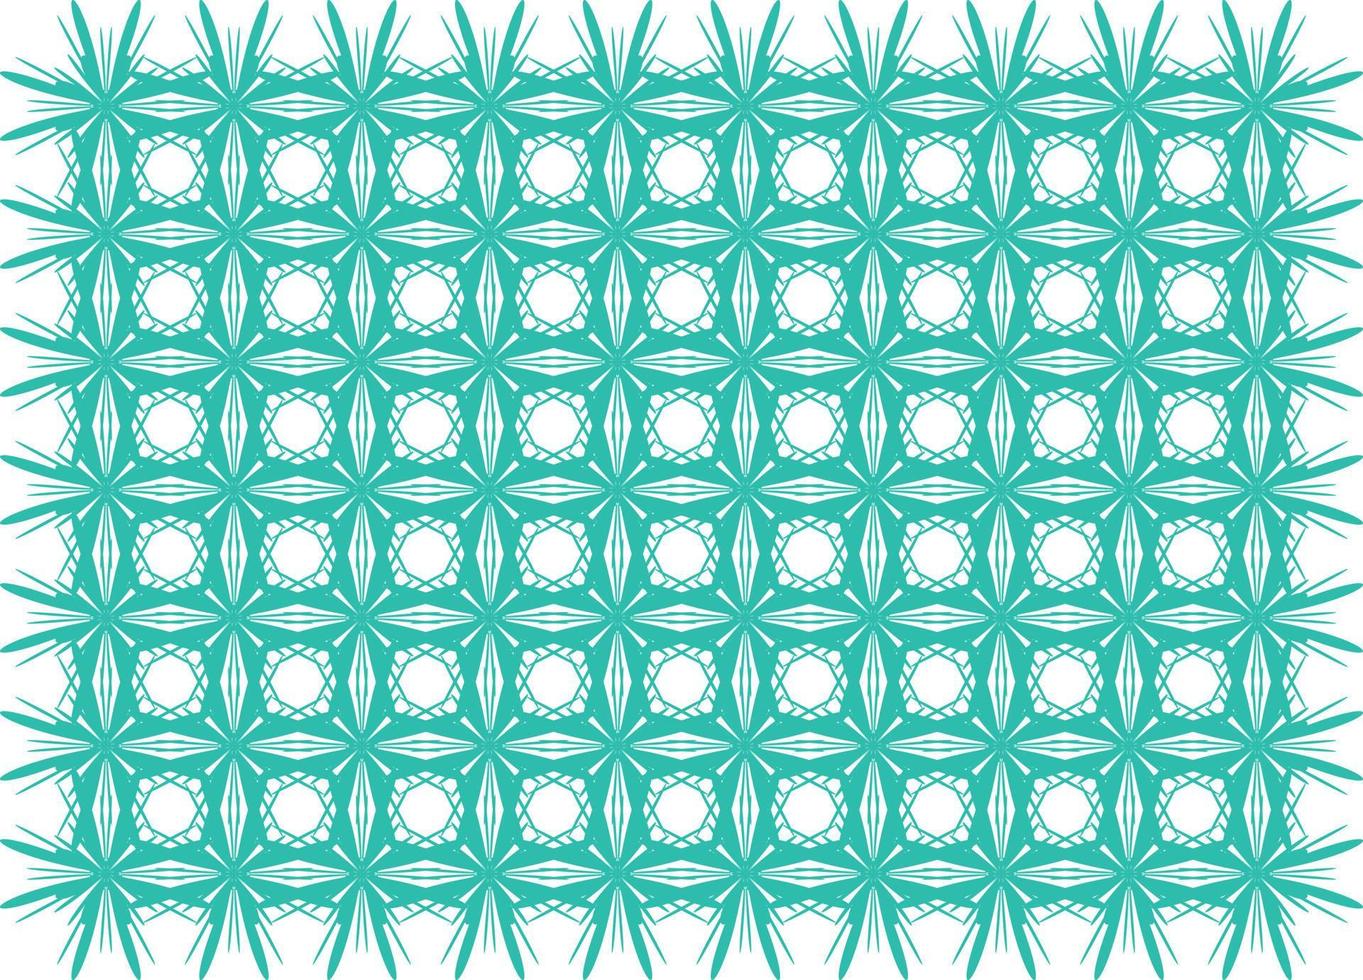 patrón de vector de diseño de fondo abstracto. patrón textil y de tela. patrón de elemento abstracto.